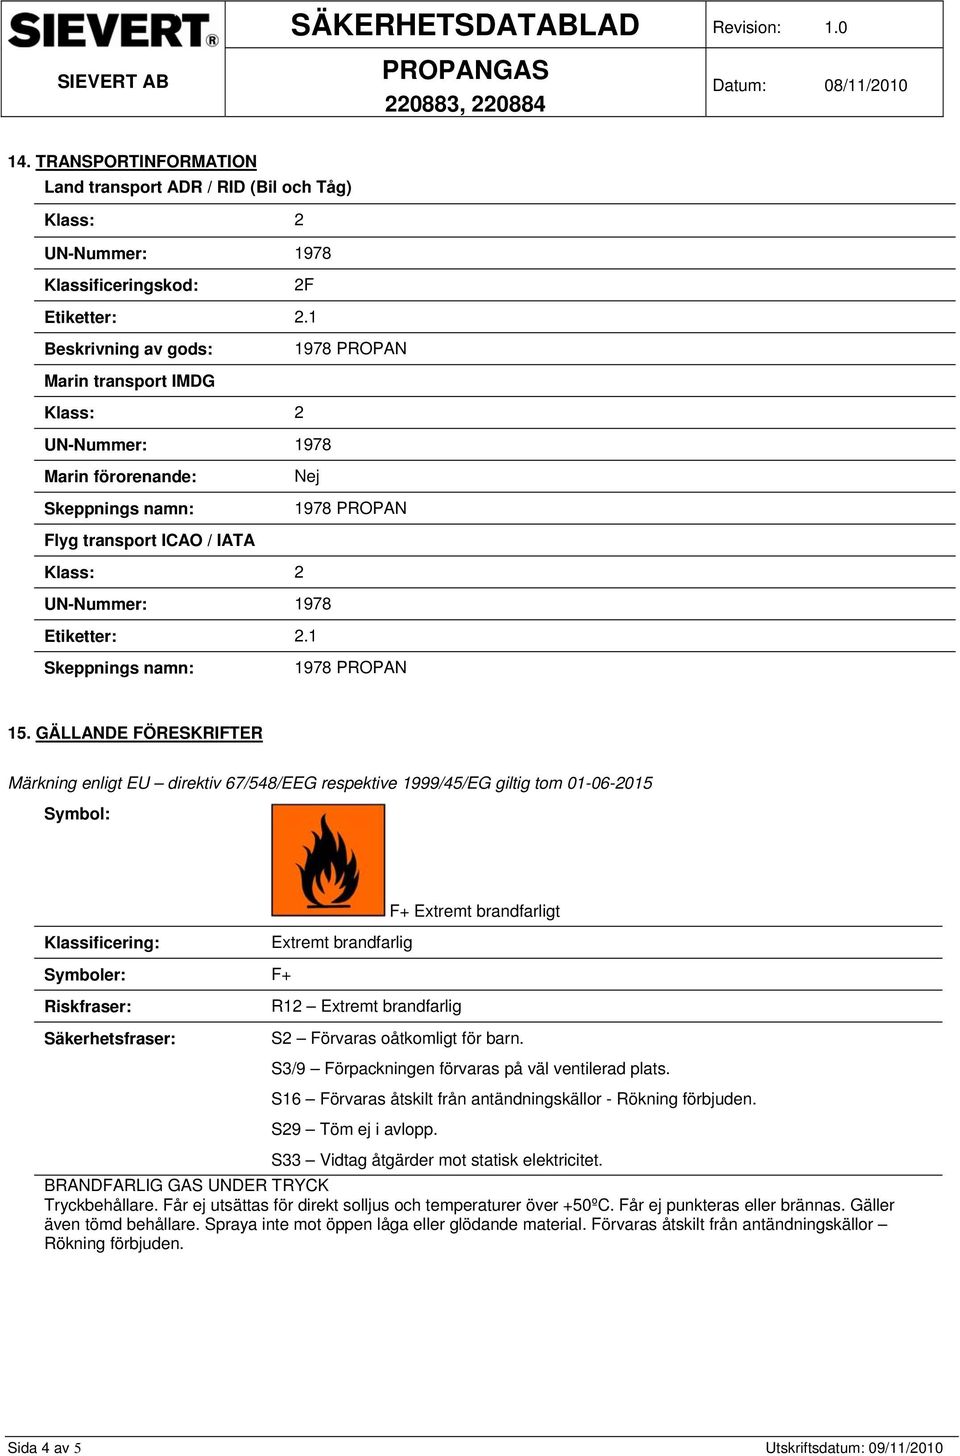 GÄLLANDE FÖRESKRIFTER Märkning enligt EU direktiv 67/548/EEG respektive 1999/45/EG giltig tom 01-06-2015 Symbol: F+ Extremt brandfarligt Klassificering: Extremt brandfarlig Symboler: F+ Riskfraser: